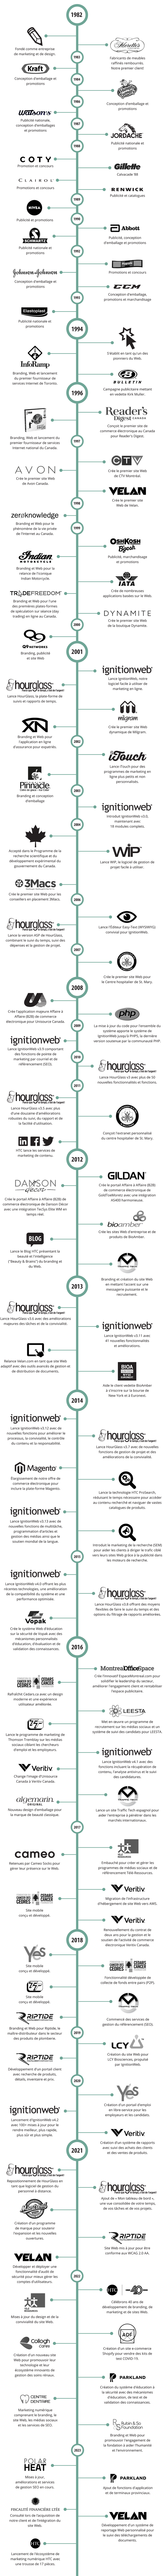 Graphique chronologique de l'histoire de HTC